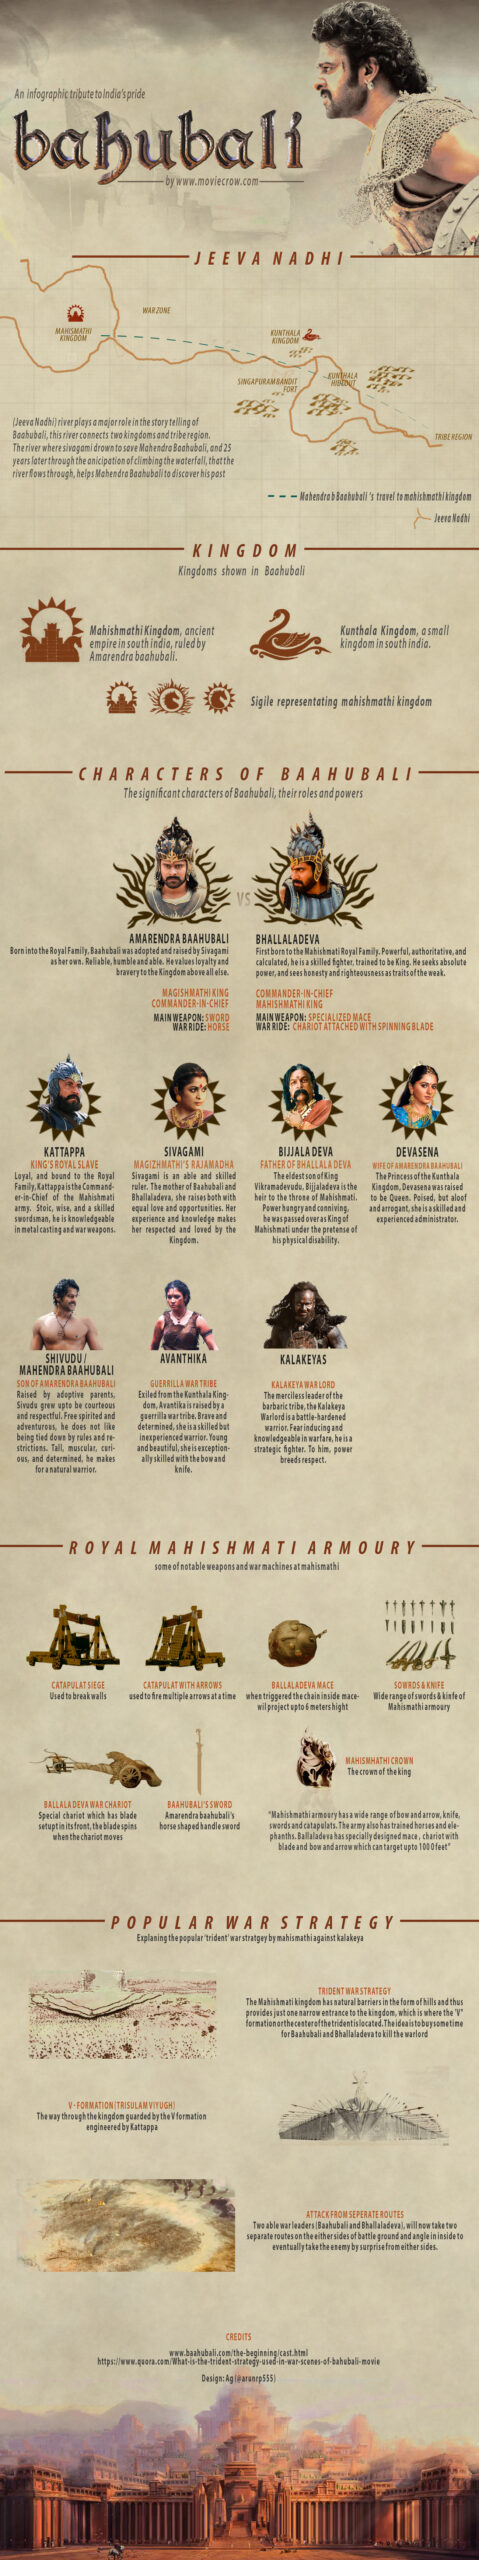 Baahubali Infographic